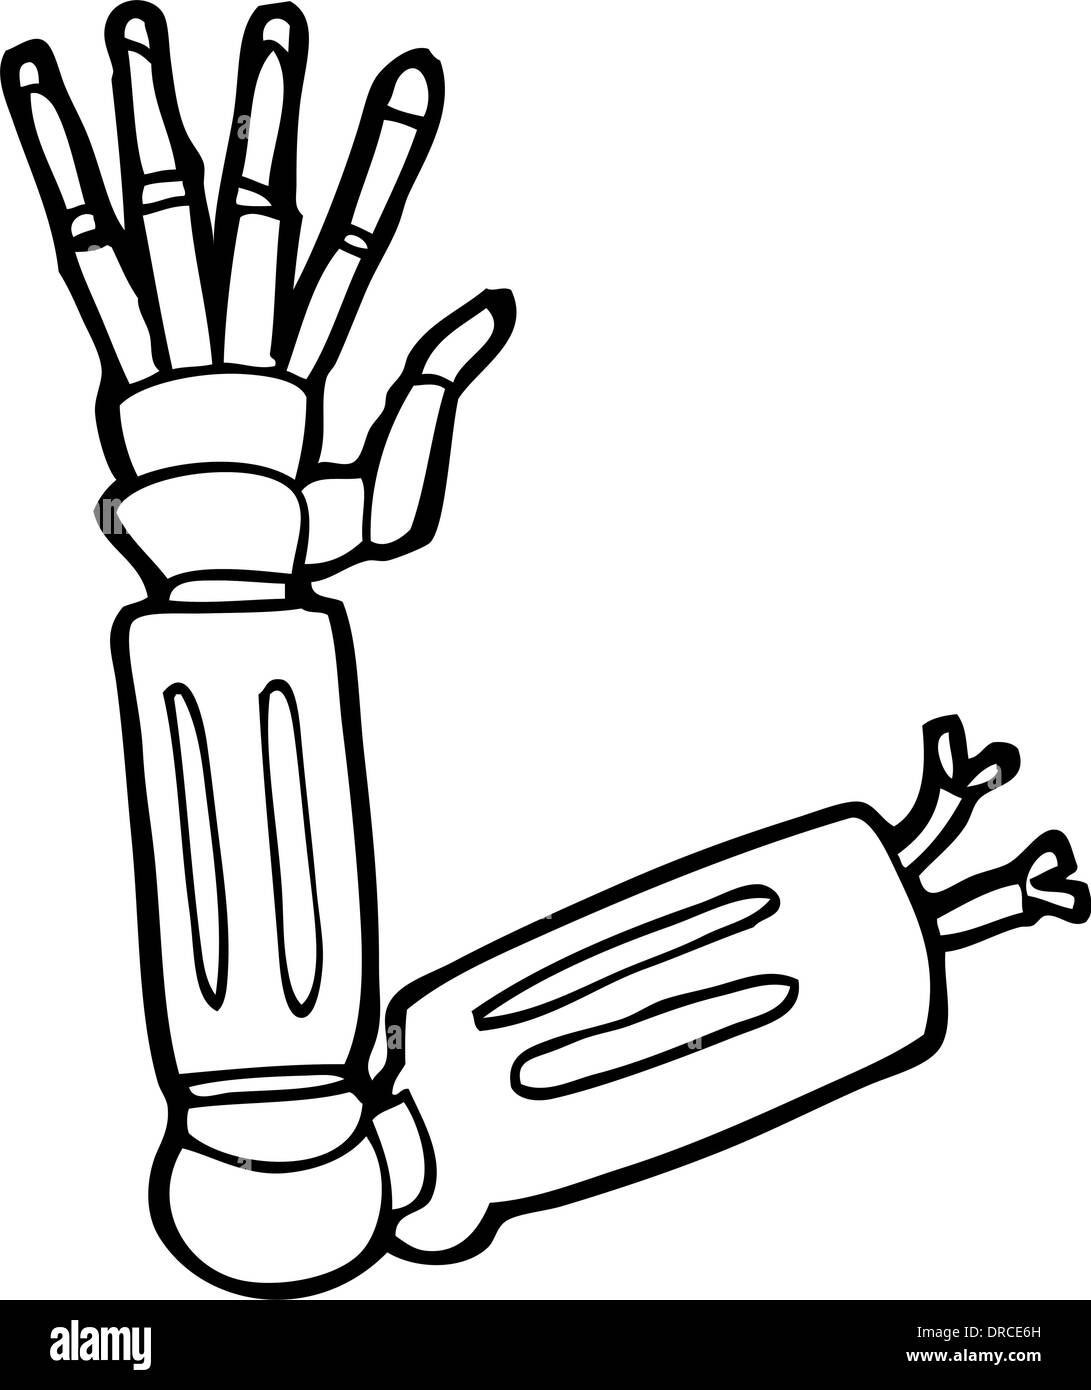 cyborg arm drawing